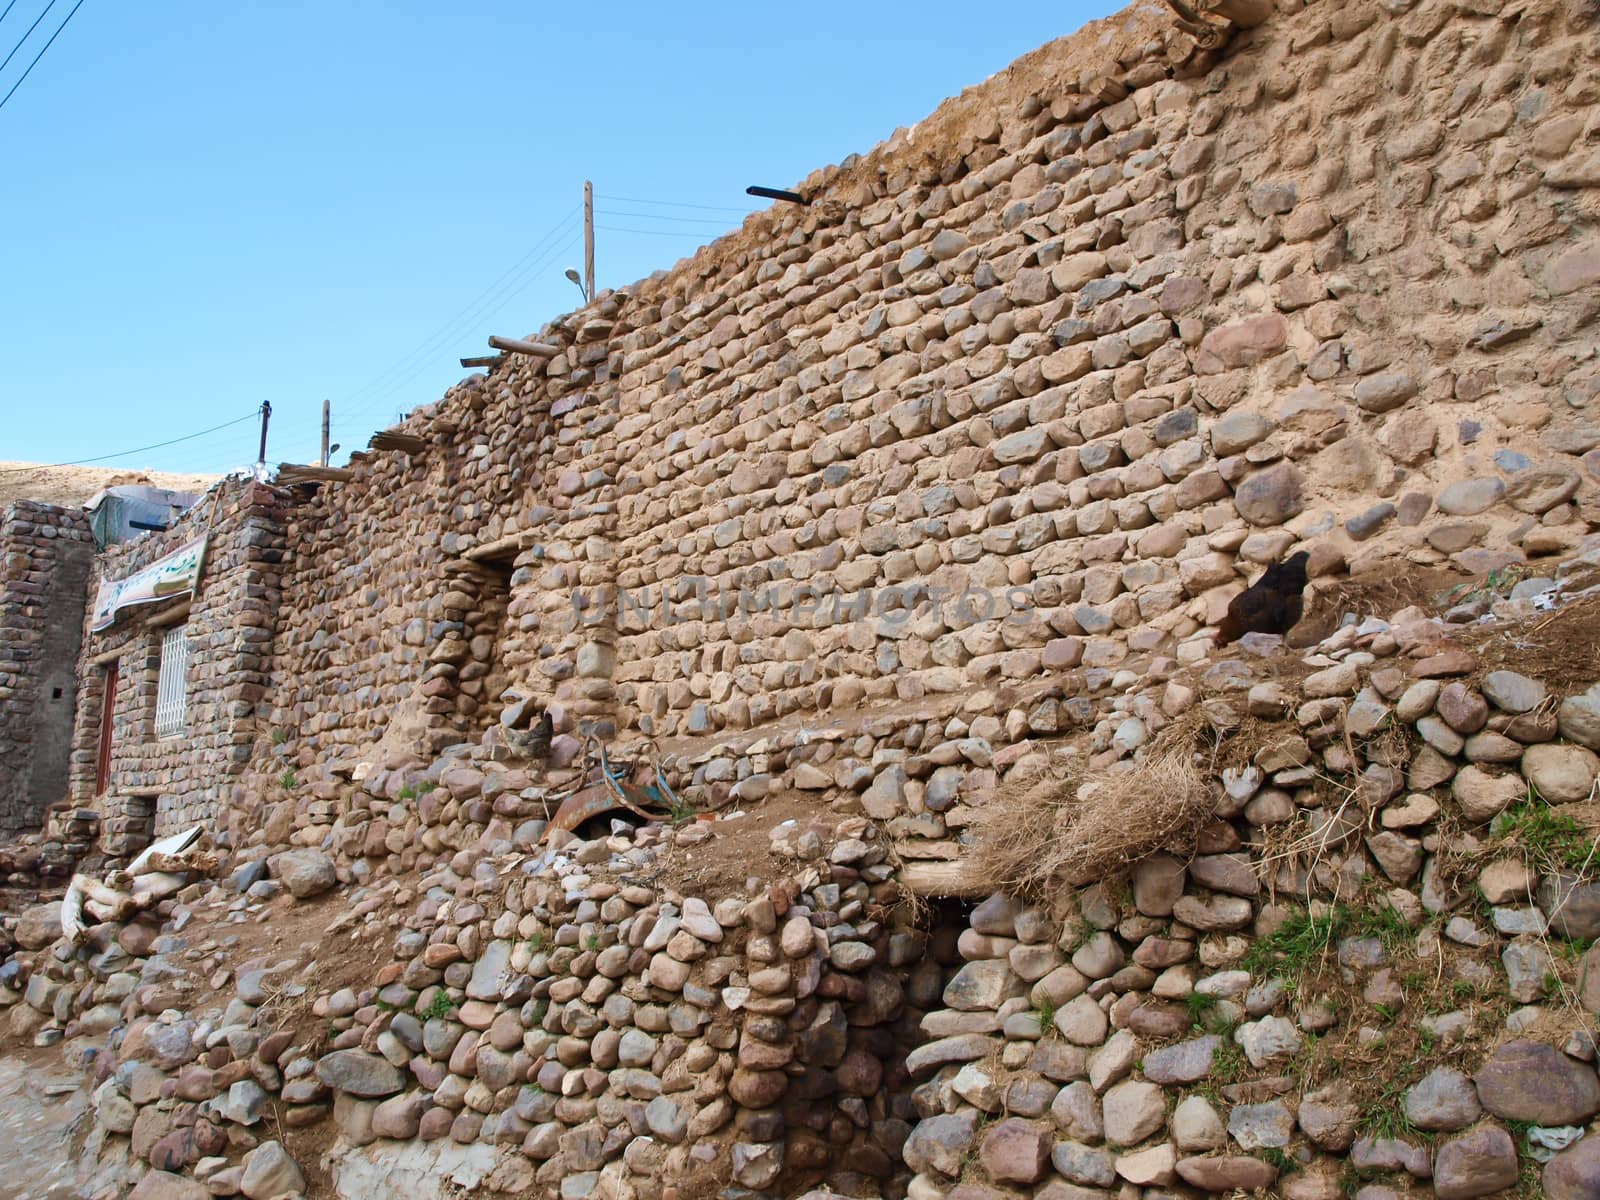 Brick-work in Kandovan village in Tabriz, Iran by gururugu